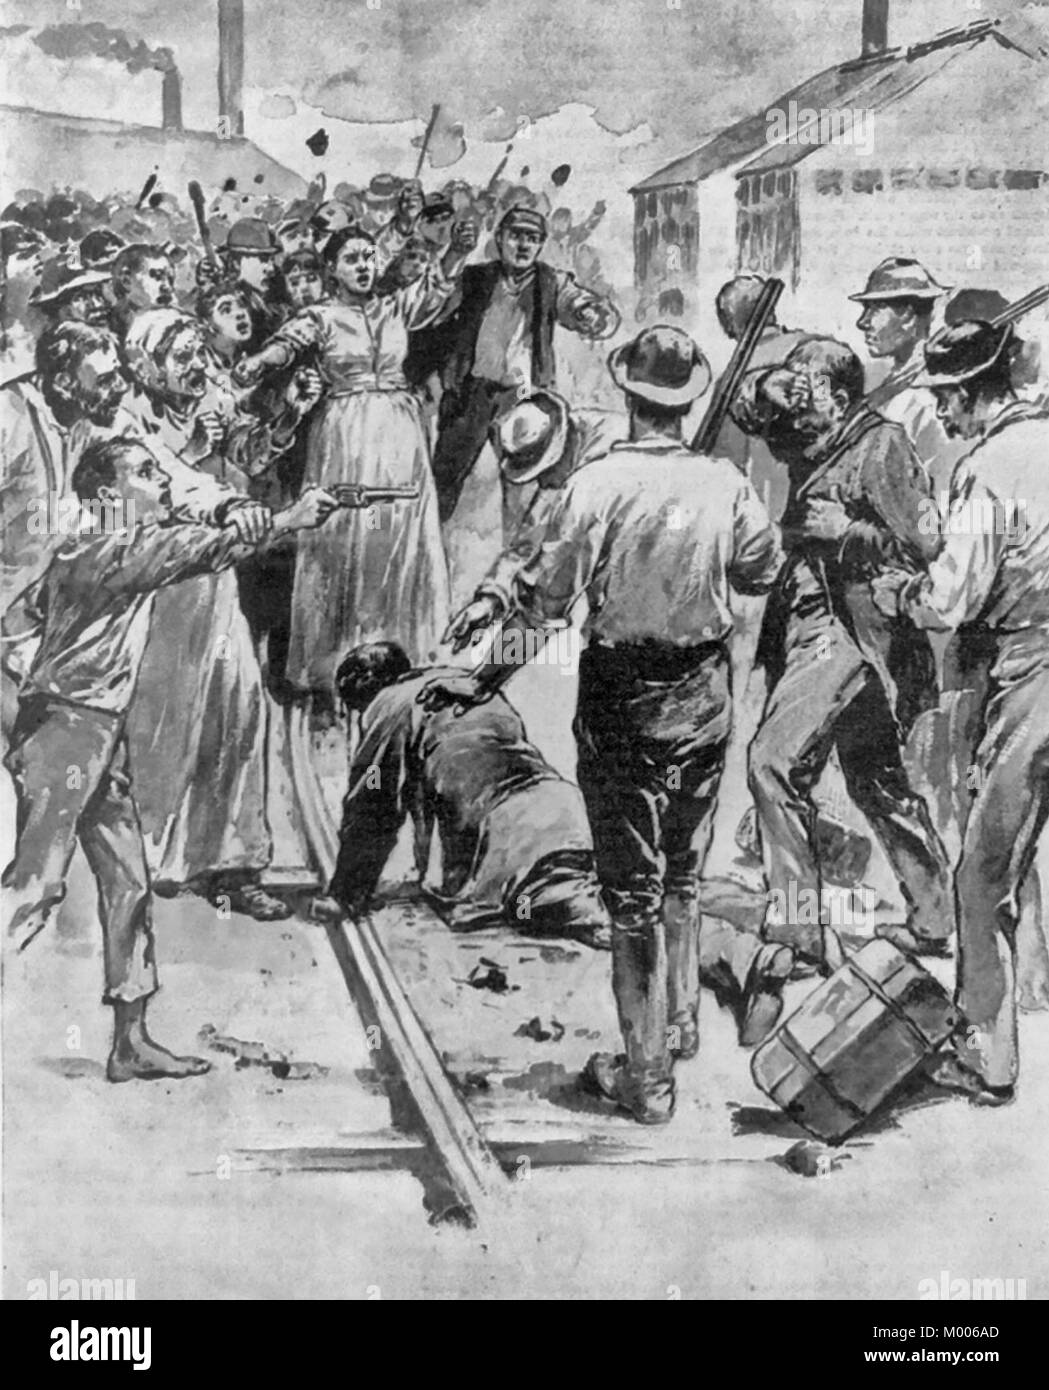 Les problèmes du travail à Homestead, Pennsylvanie - Attaque des grévistes et leurs sympathisants sur les remises Pinkerton les hommes. Juillet 1892 Banque D'Images